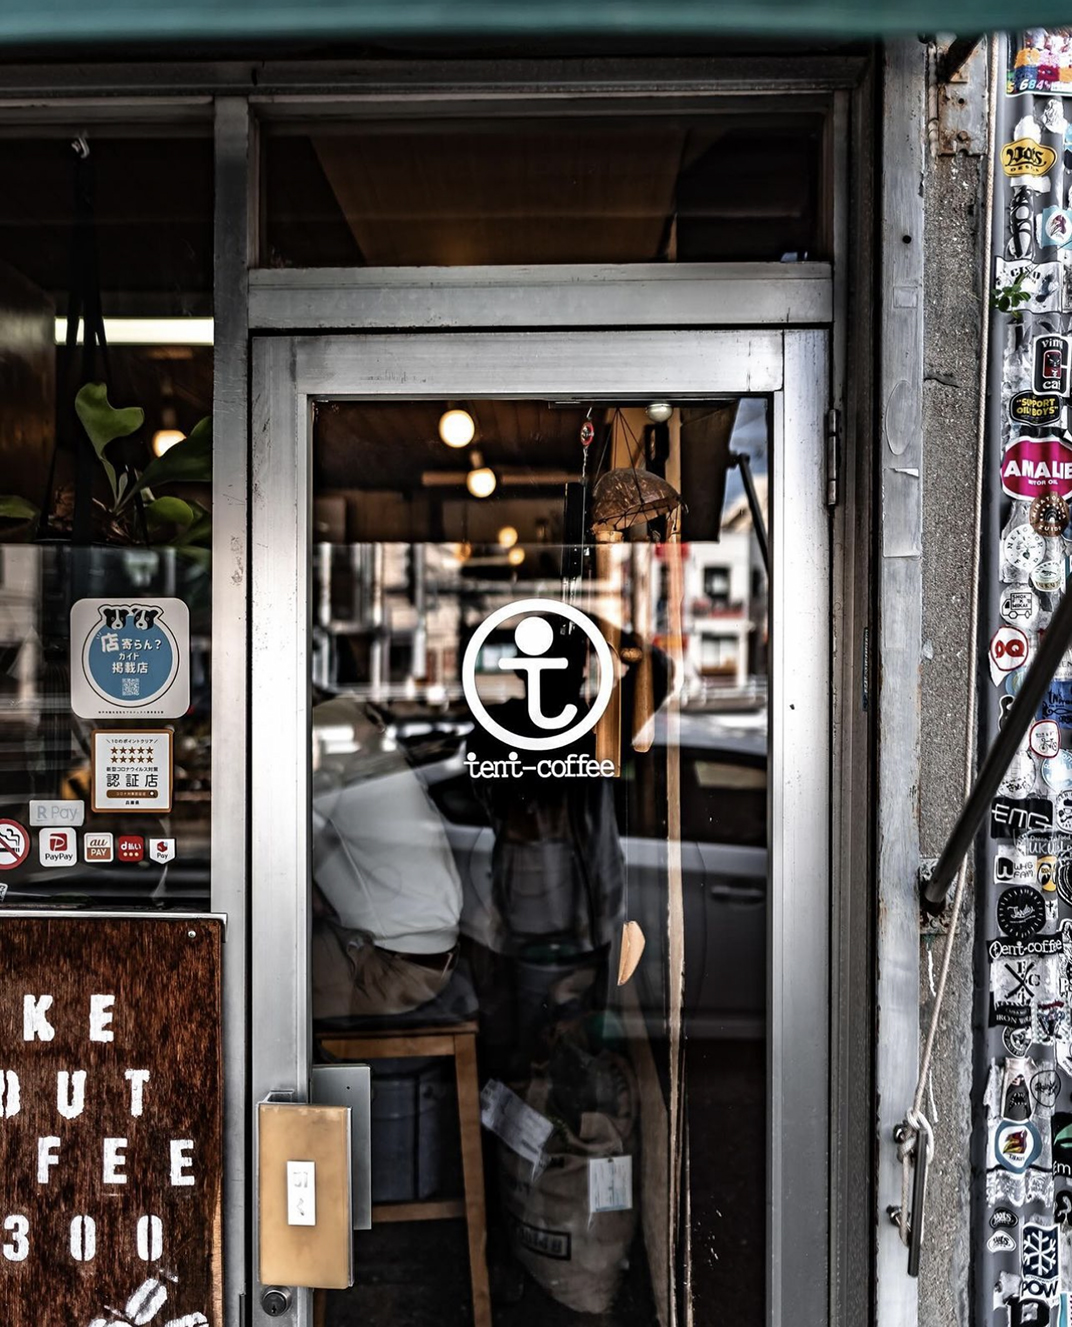 土锅烘煎咖啡馆tent-coffee 日本 深圳 上海 北京 广州 武汉 咖啡店 餐饮商业 logo设计 vi设计 空间设计